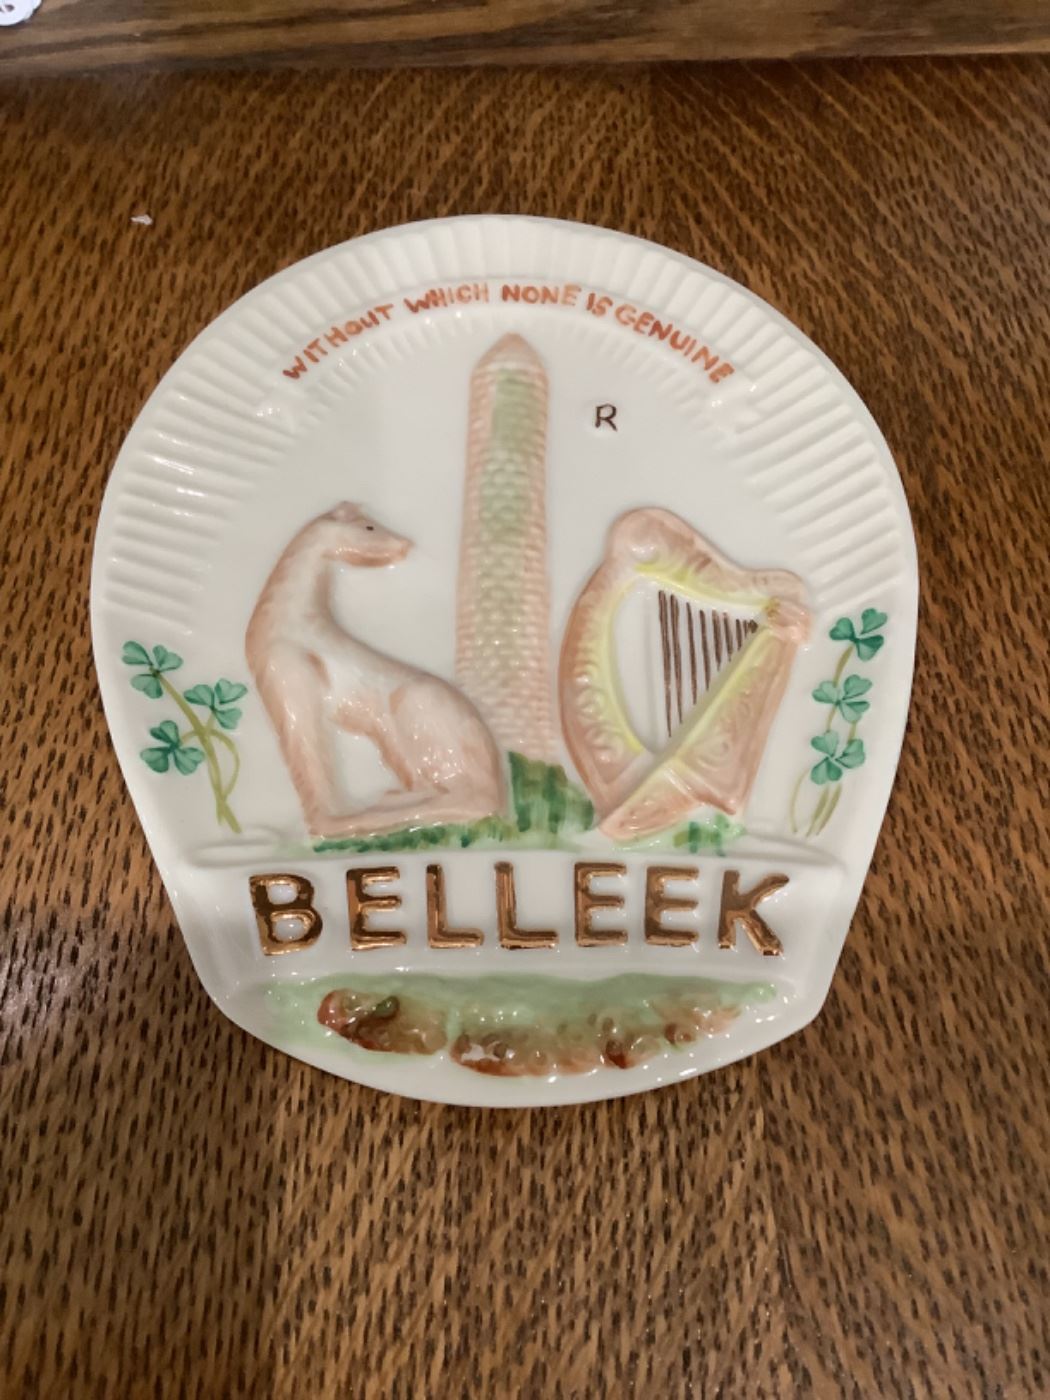 Collector’s Society 1979 Belleek logo plaque $18